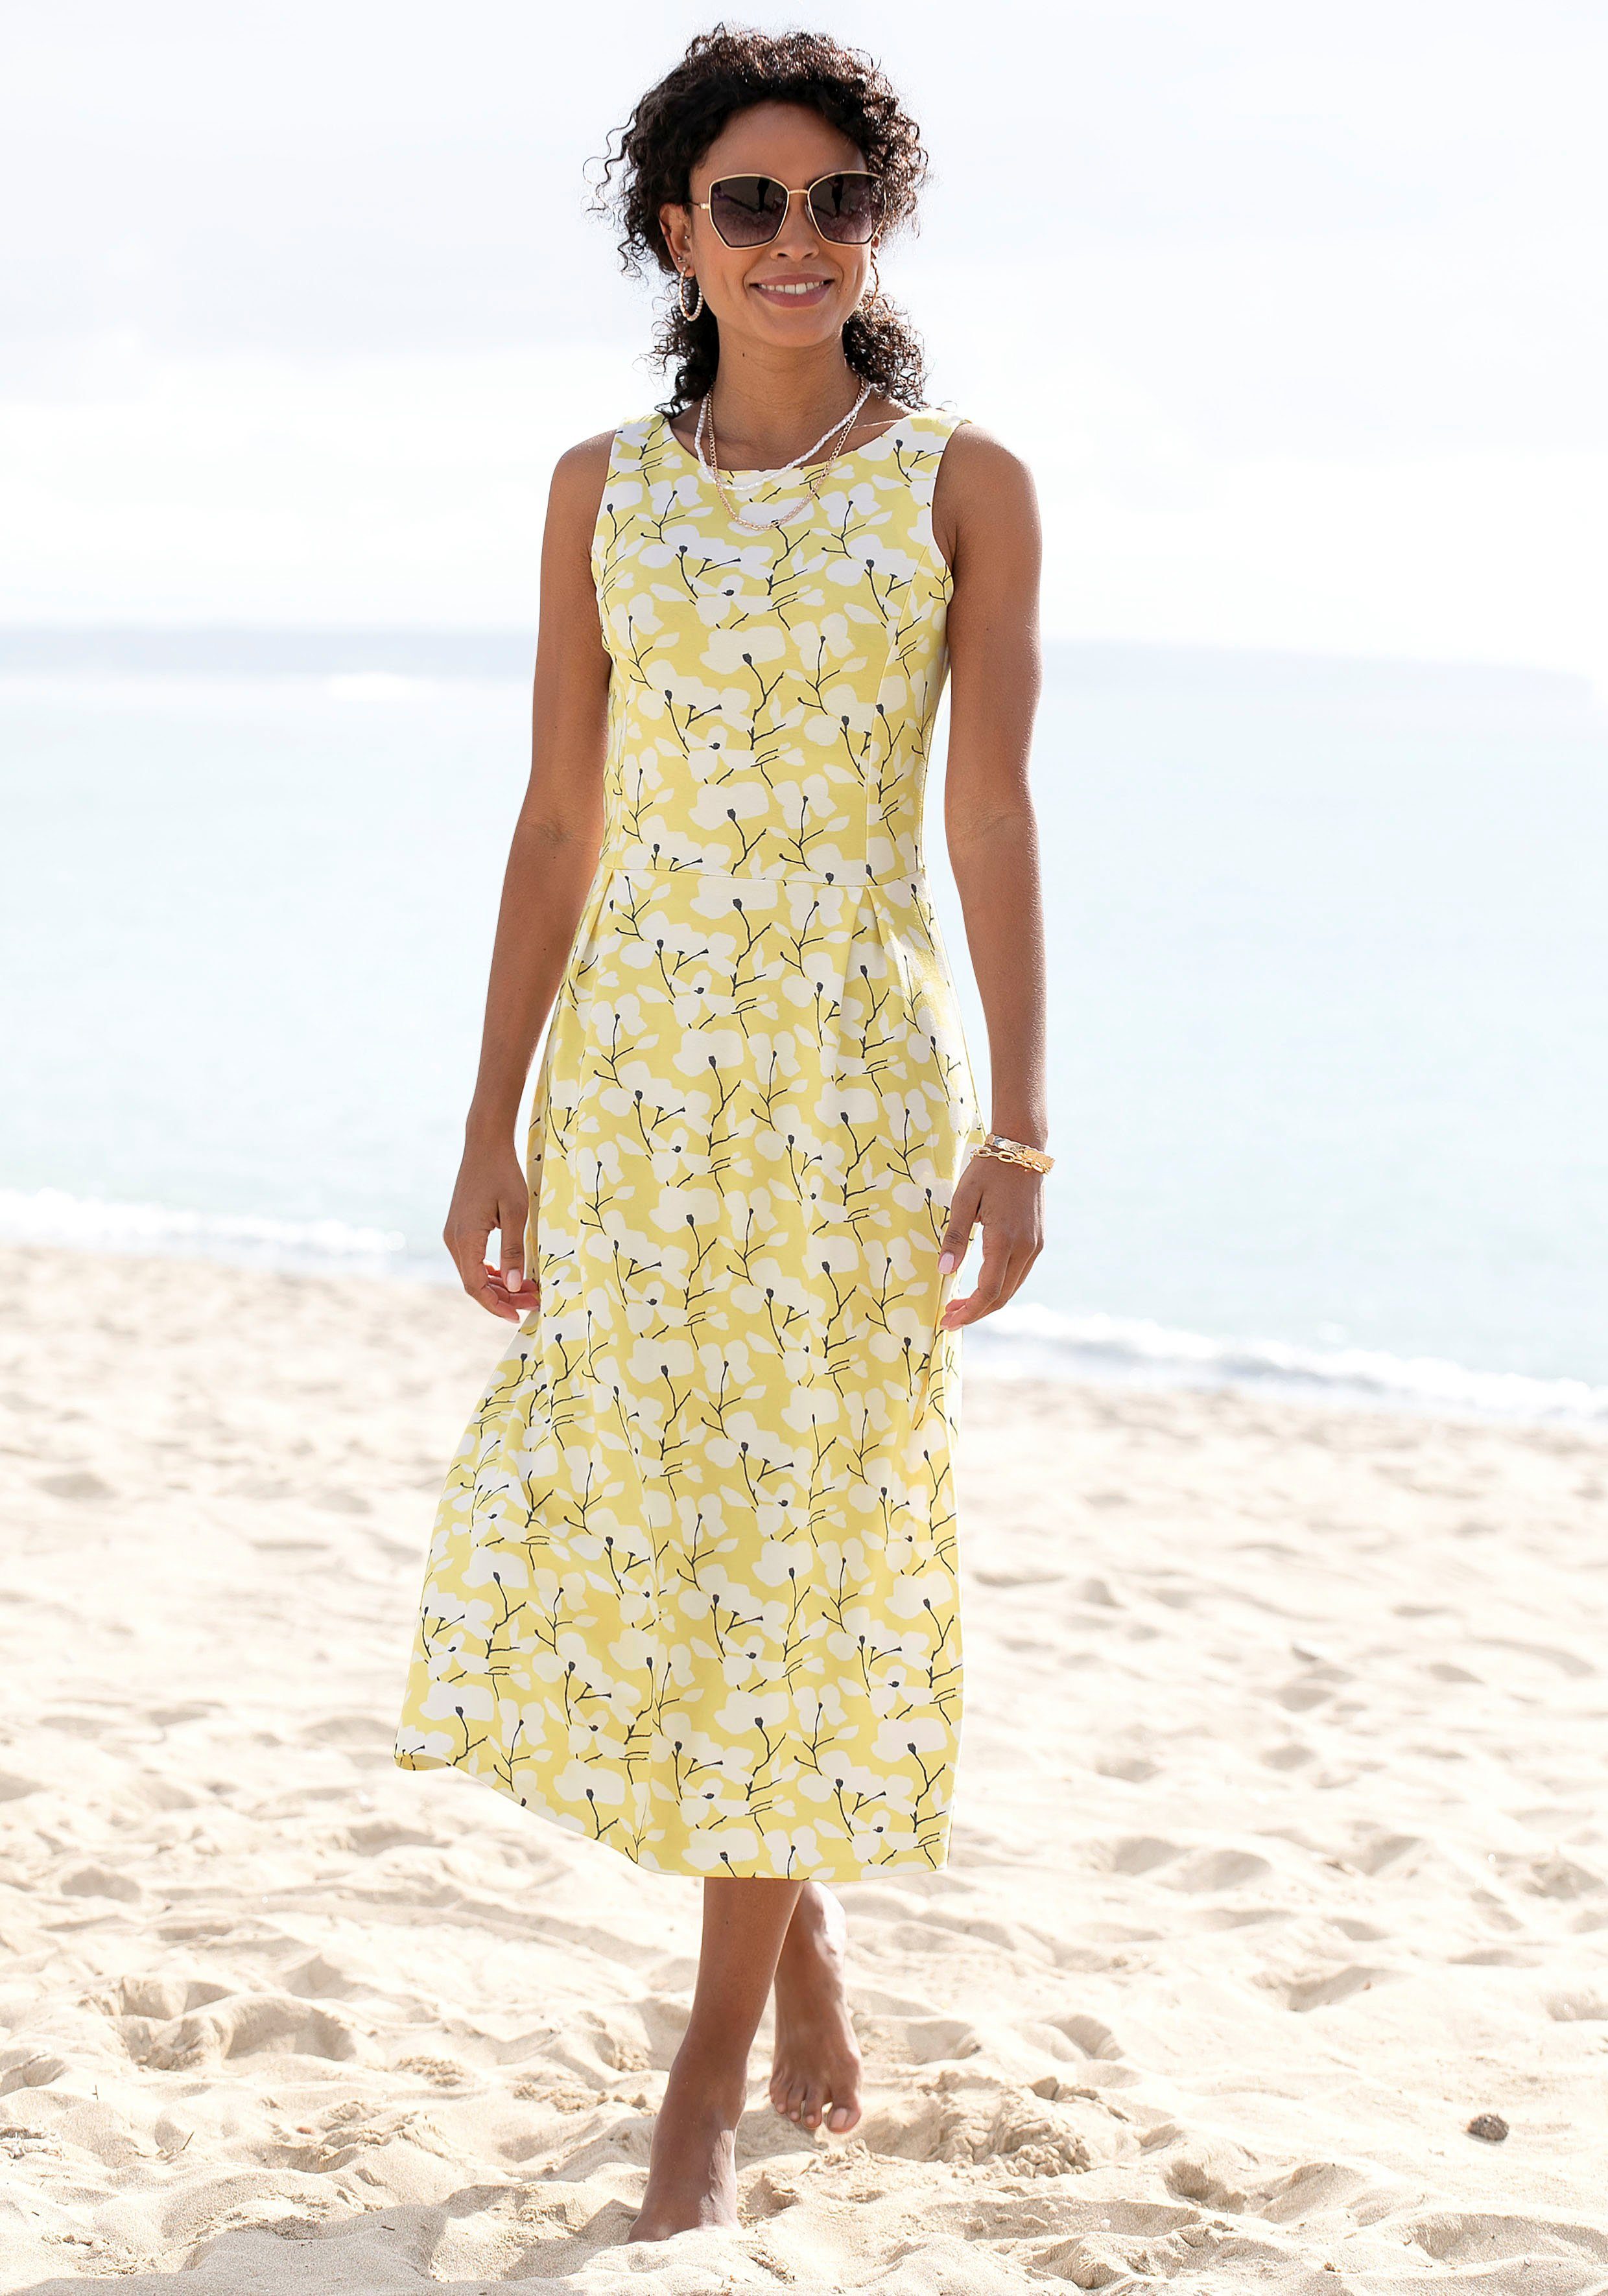 Strandbekleidung mit Sommerkleid Blumendruck, Beachtime gelb-creme-bedruckt Strandmode,